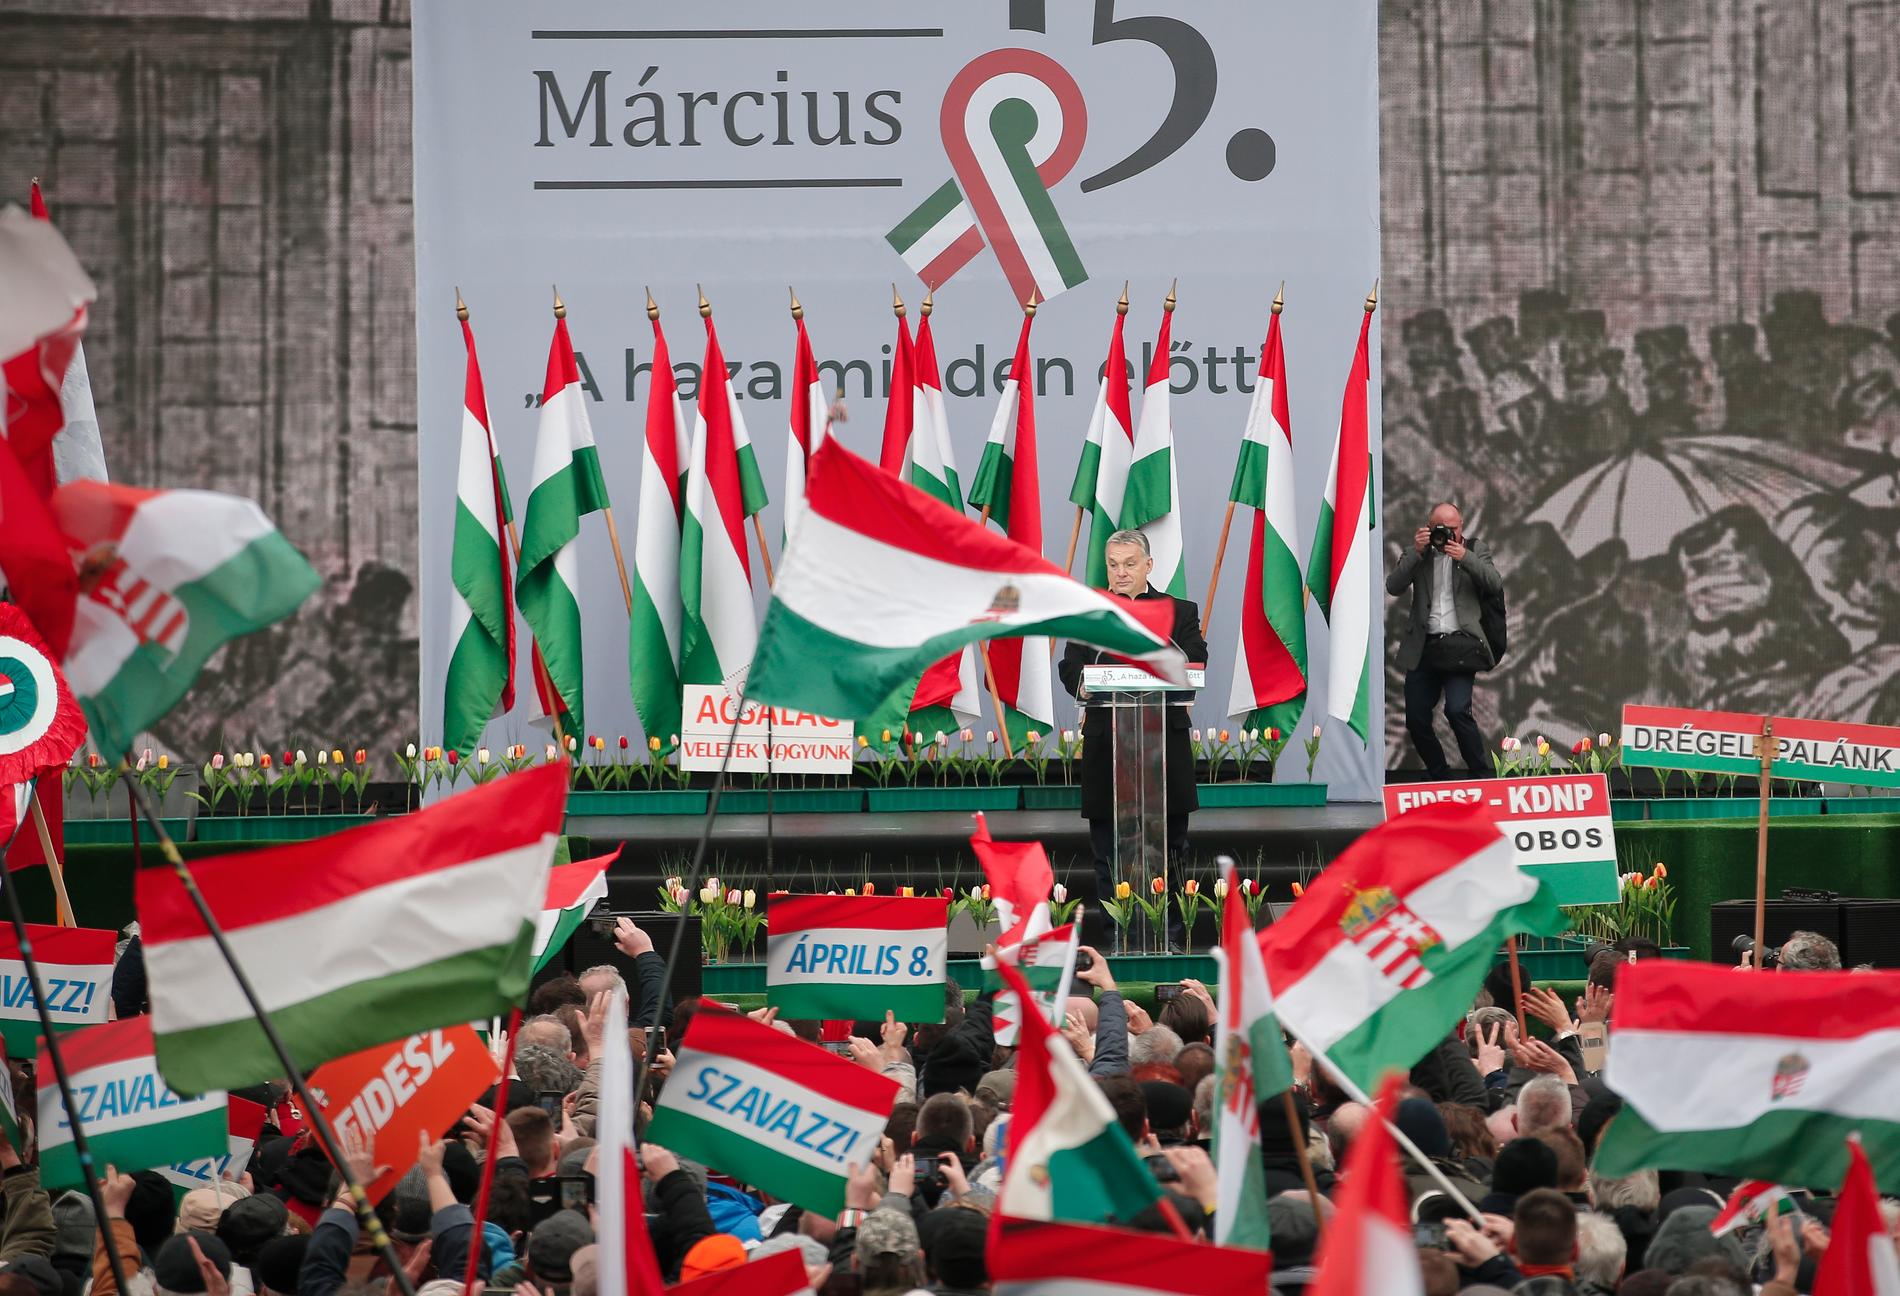 Tiotusentals anhängare till Ungerns premiärminister Viktor Orbán demonstrerade i Budapest till stöd för hans politik inför valet i april i Budapest torsdagen.